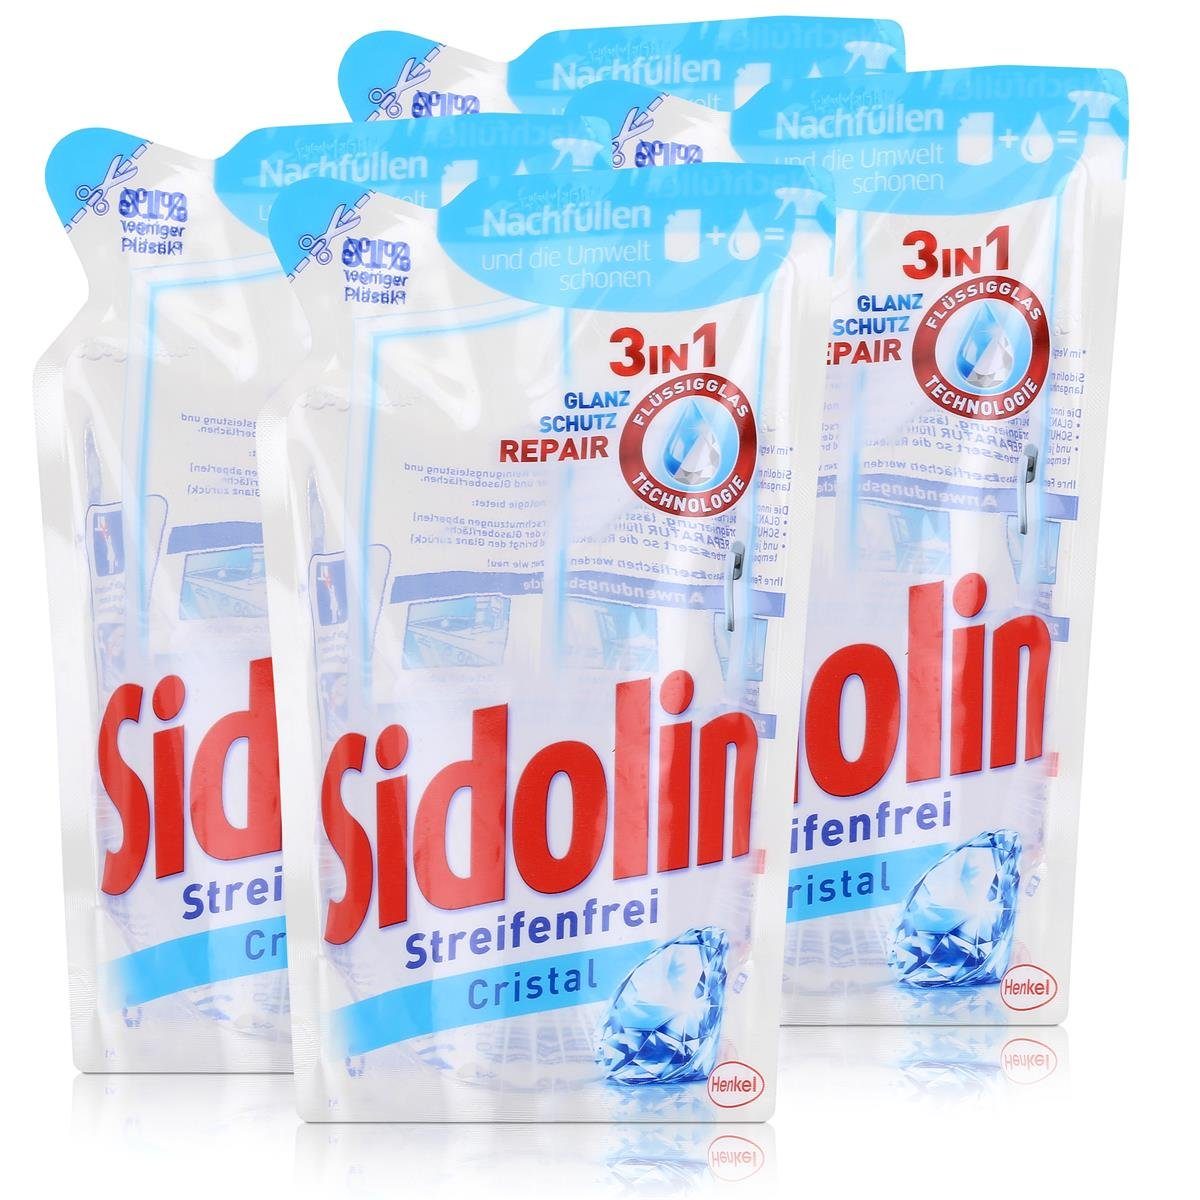 SIDOLIN Sidolin Streifenfrei Cristal Nachfüller 250ml - Glasreiniger (4er Pack Glasreiniger